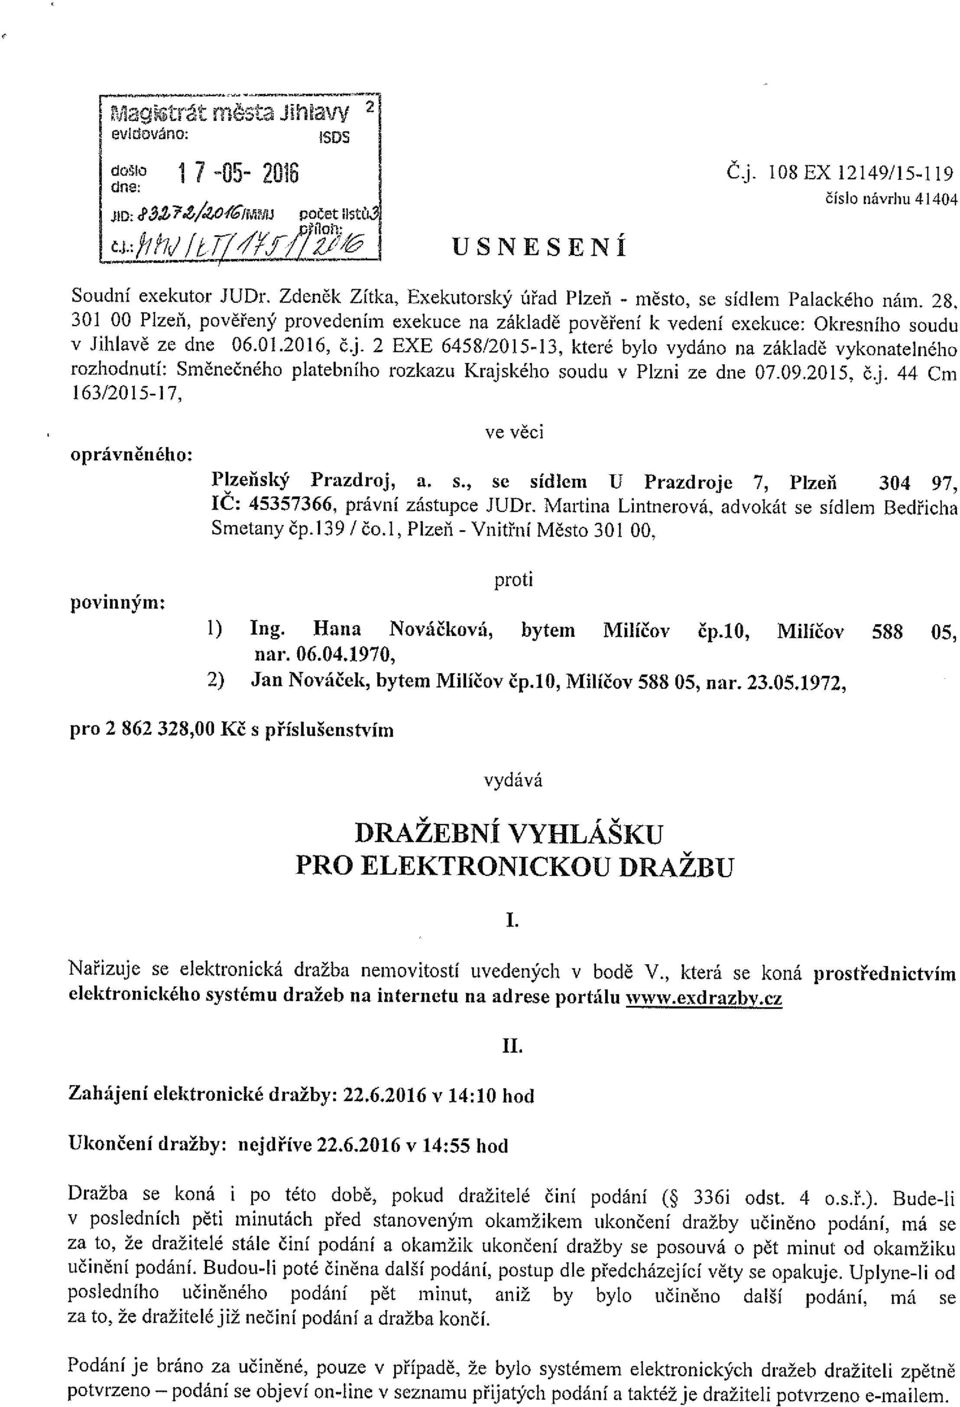 j. 2 EXE 6458/2015-13, které bylo vydáno na základě vykonatelného rozhodnutí: Směnečného platebního rozkazu Krajského soudu v Plzni ze dne 07.09.2015, č.j. 44 Cm 163/2015-17.